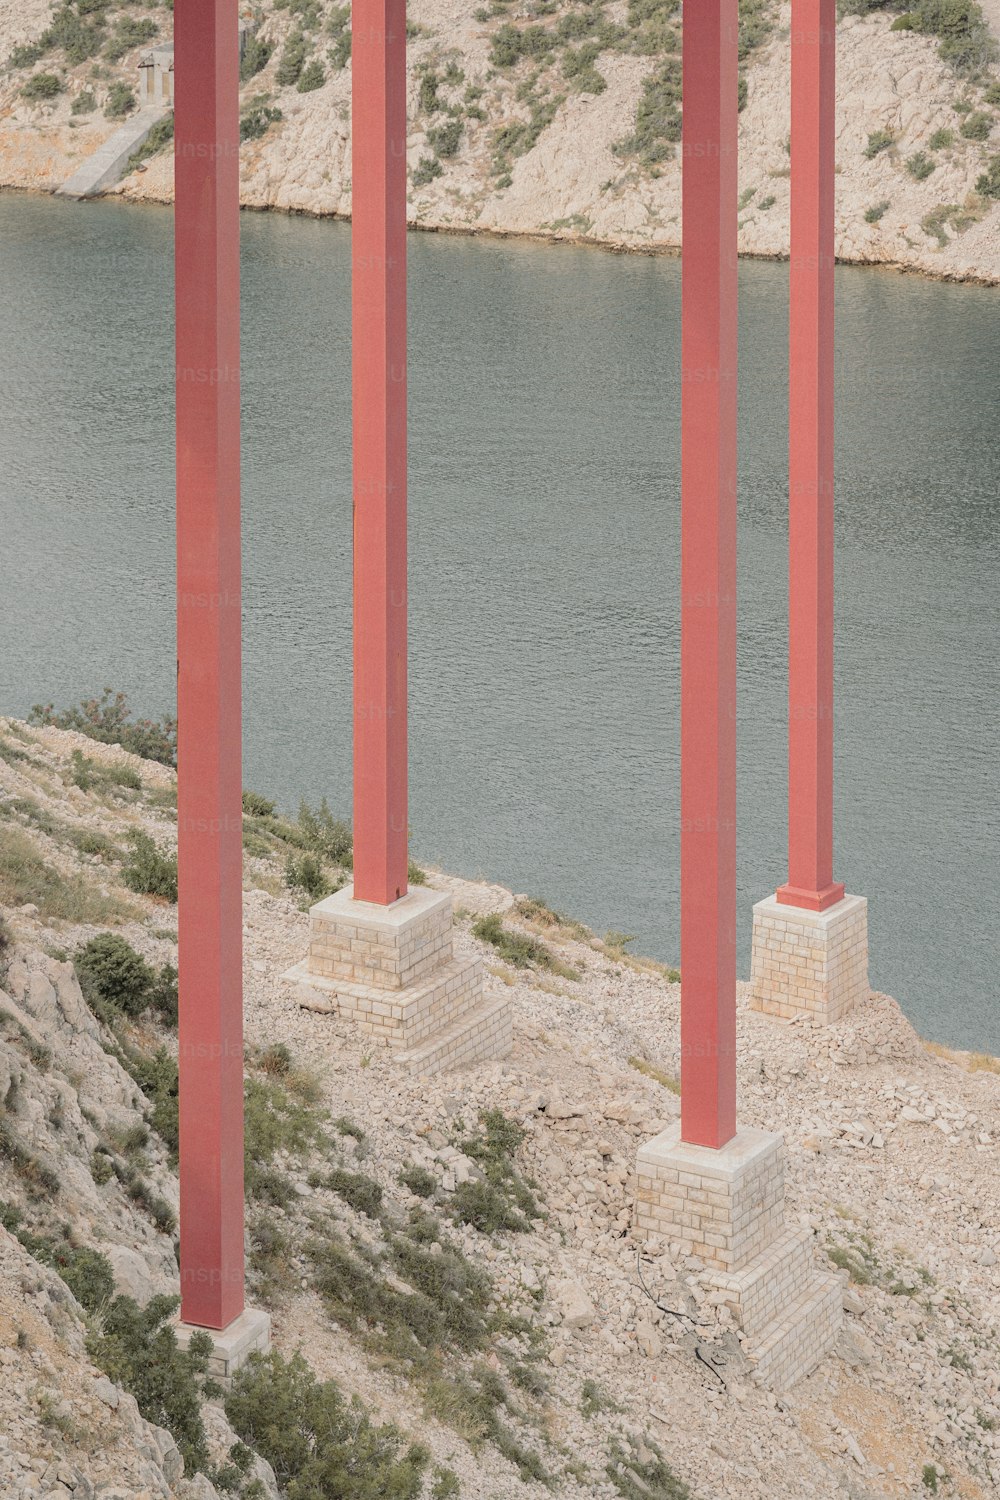 Una fila di pilastri rossi accanto a uno specchio d'acqua